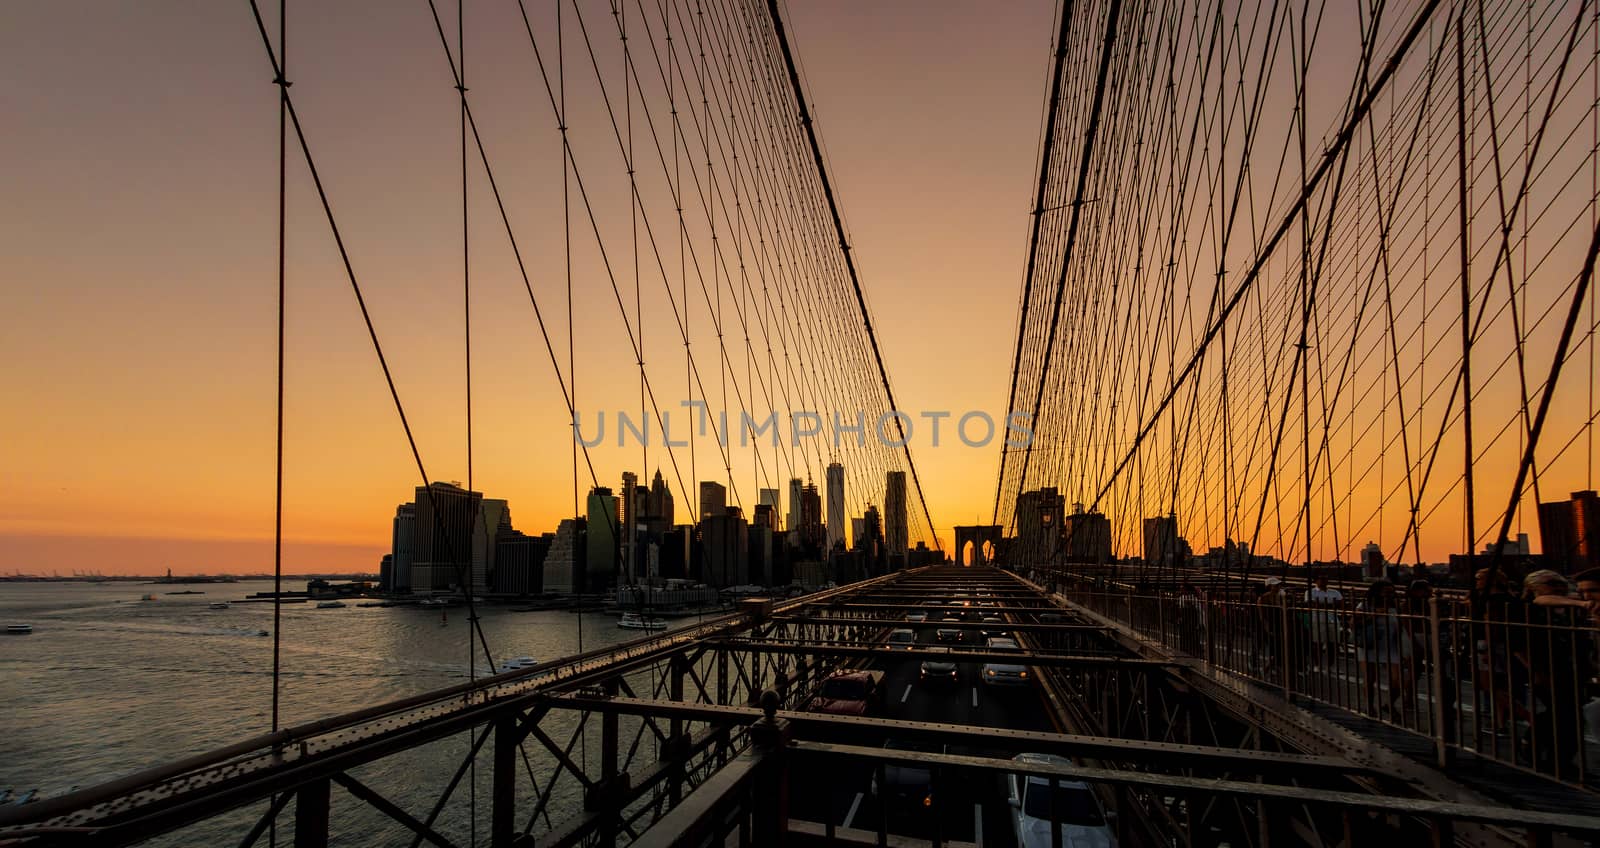 Brooklyn Bridge sunset with Manhattan skyline by ungvar